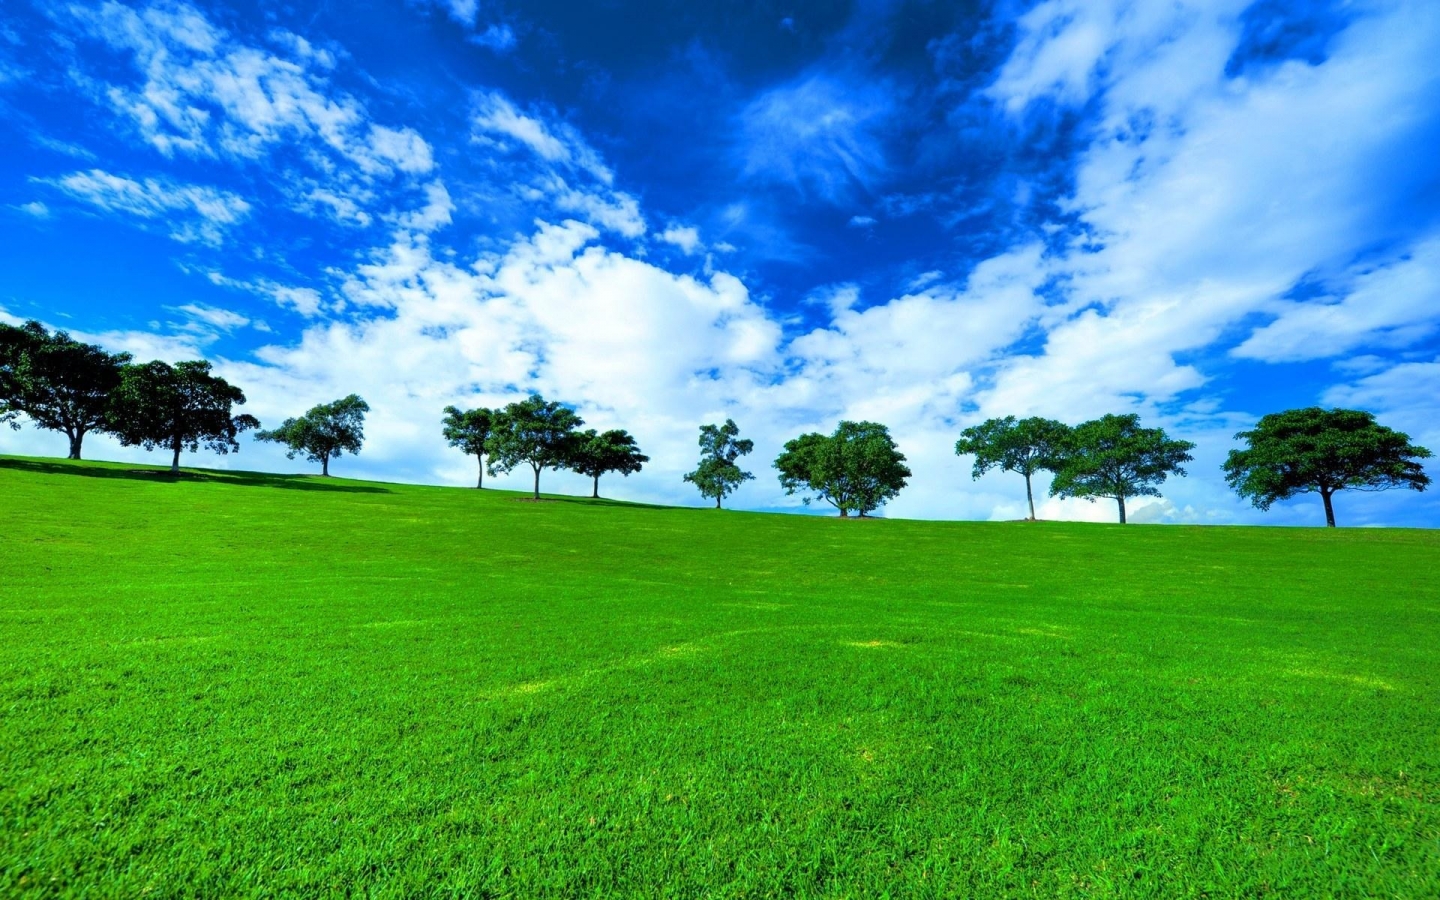 草地与树林风景图片 - 免费可商用图片 - CC0素材网